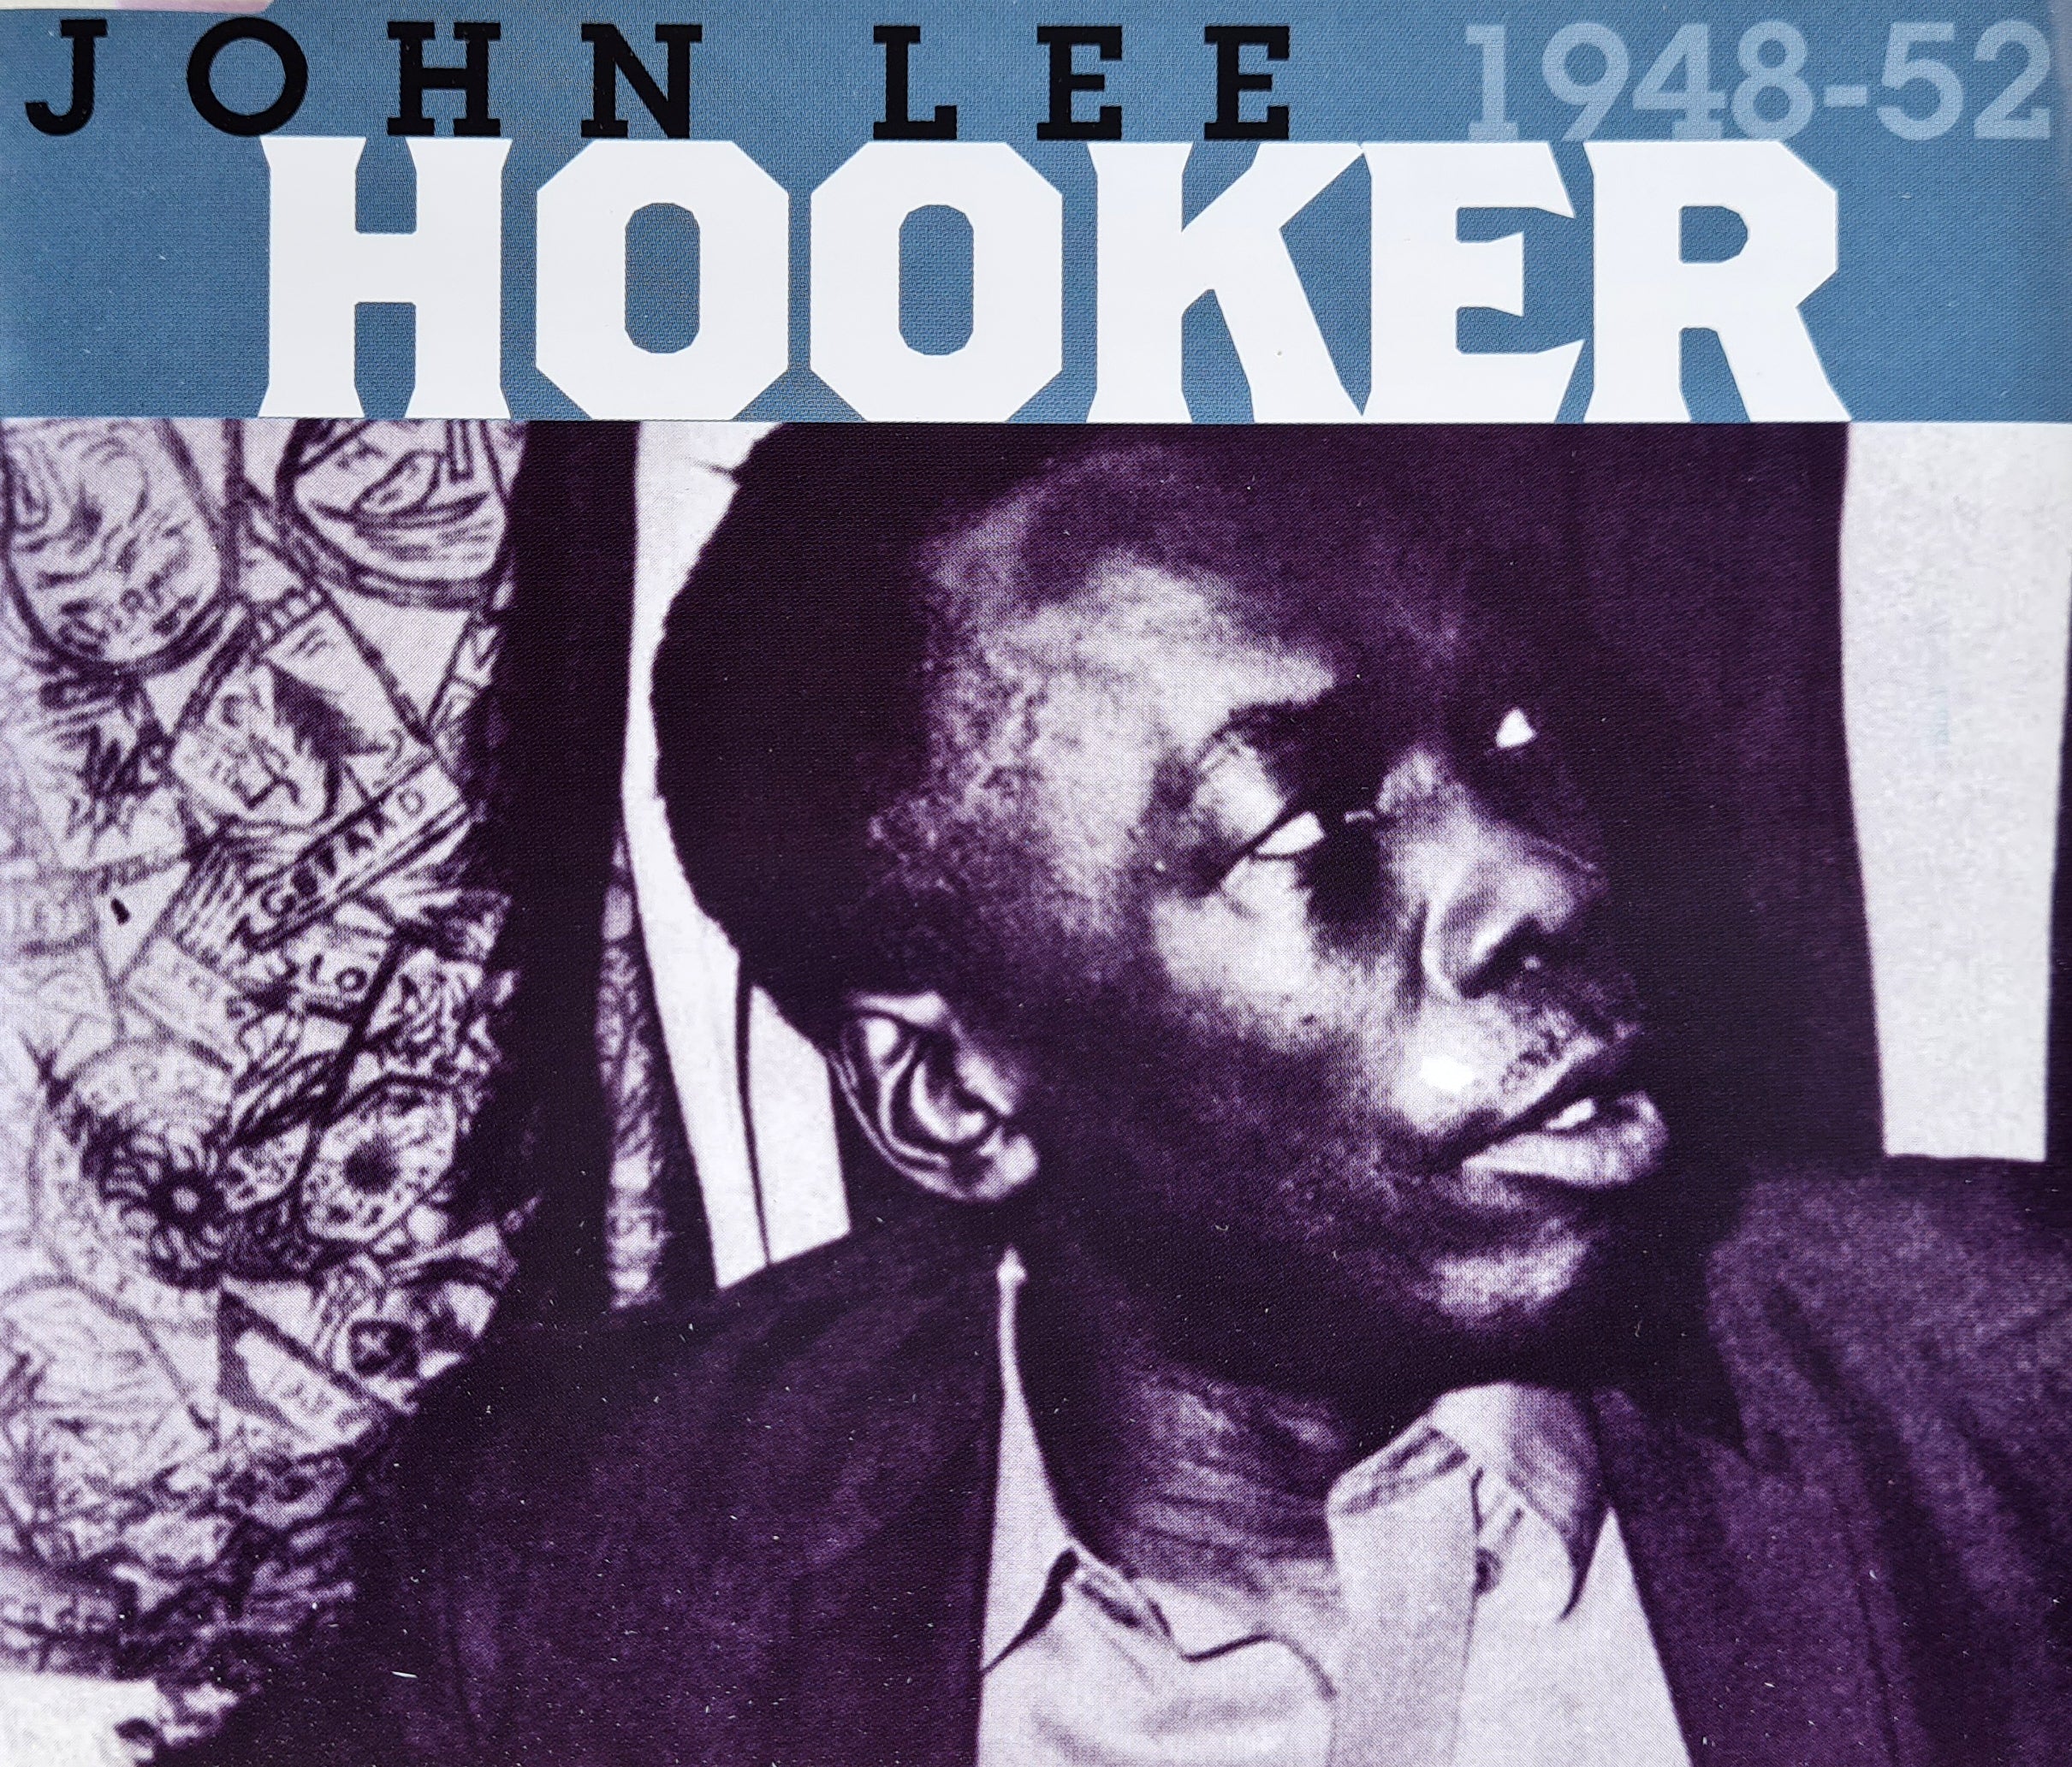 John Lee Hooker - 1948-52 (CD)